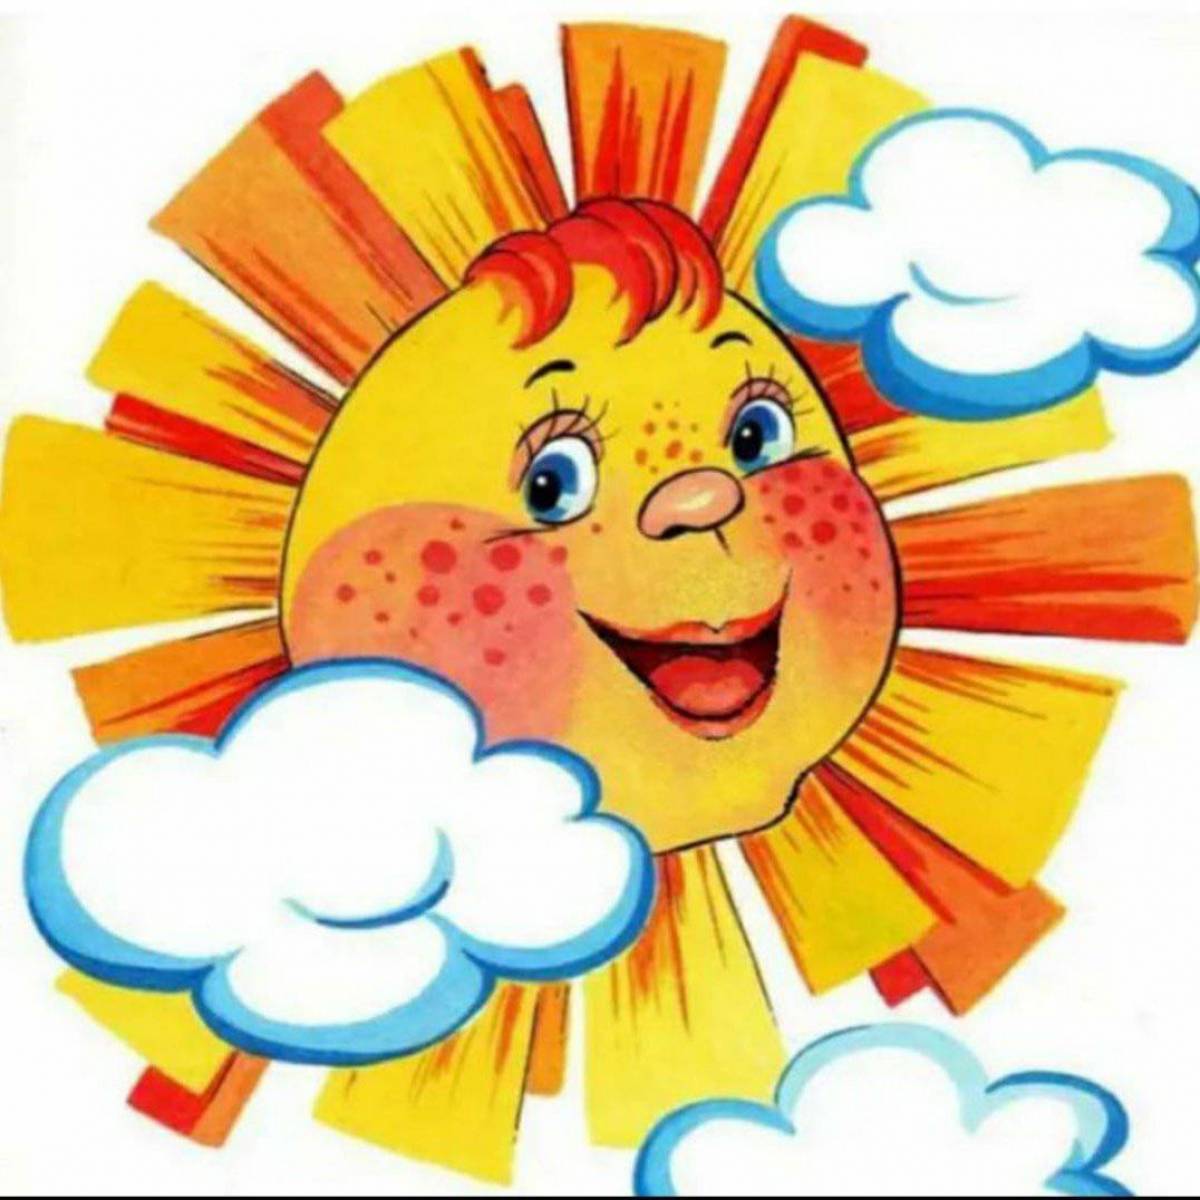 Солнце картинки для детей с названиями. Солнышко рисунок. Солнце картинка для детей. Солнышко картинка для детей. Солнце для детей дошкольного возраста.